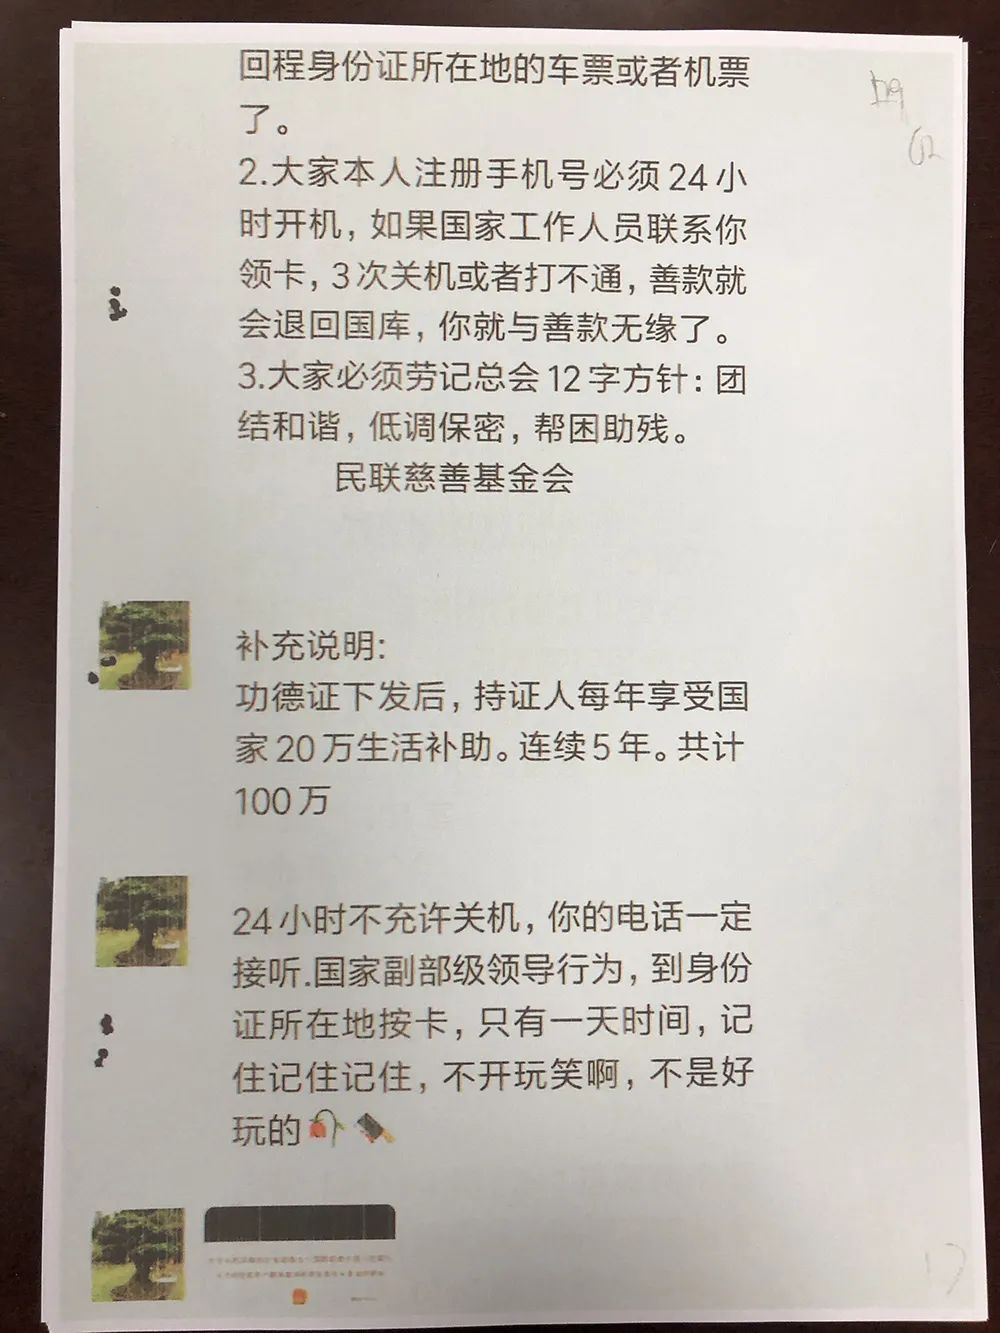 周阿姨“民联基金会”微信群聊天截图  本文图片均为上海市闵行区人民检察院供图 